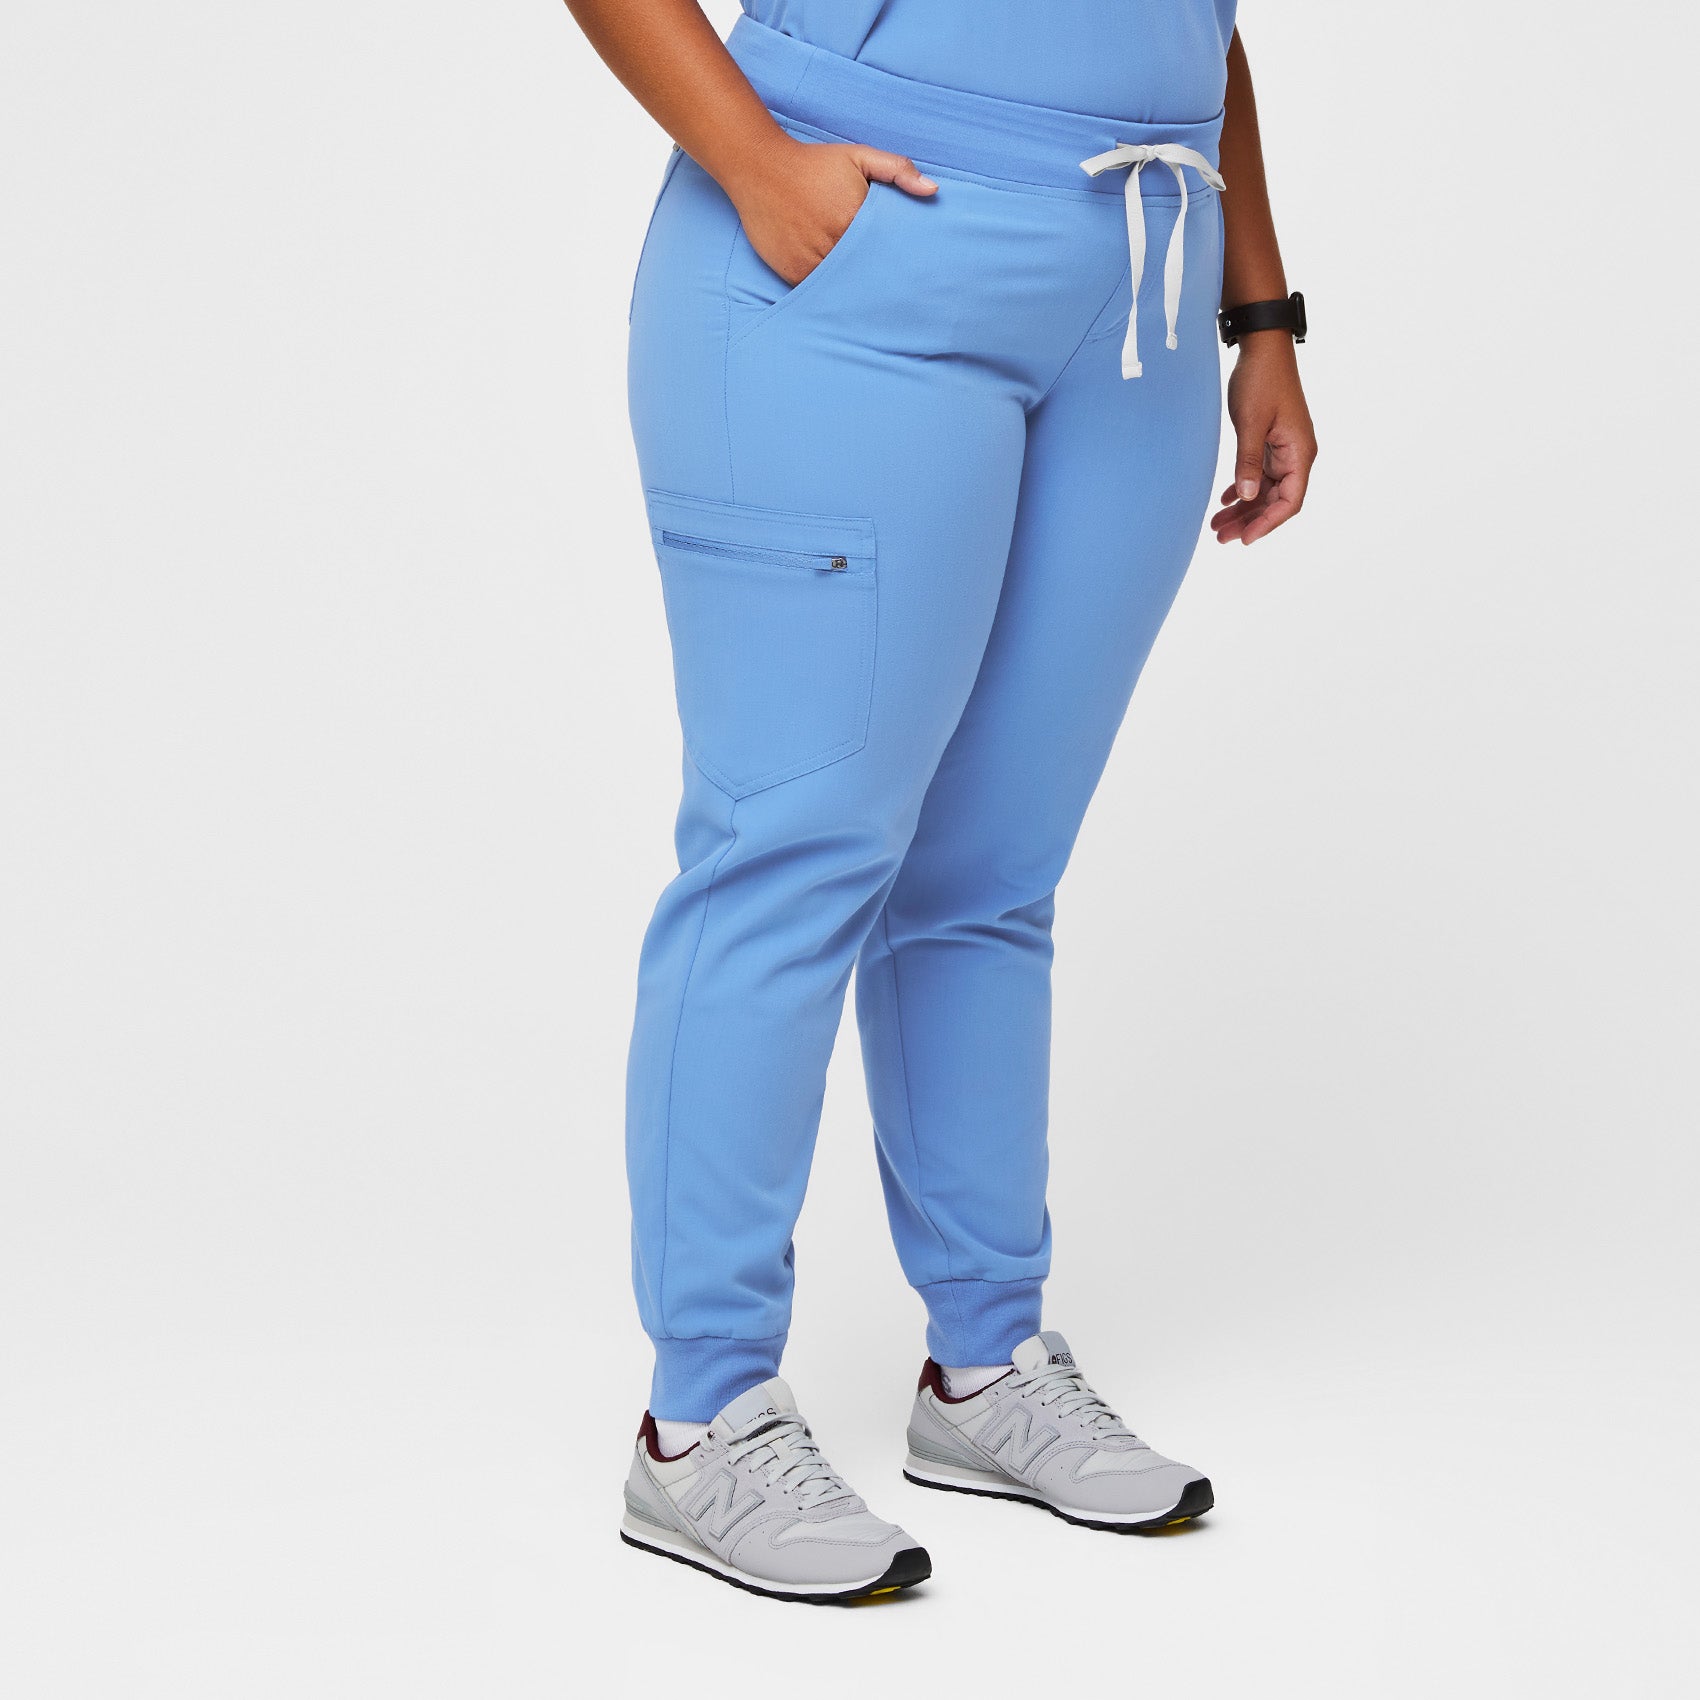 FIGS Zamora Jogger Style Scrub Pants for Women - Ceil Blue, M